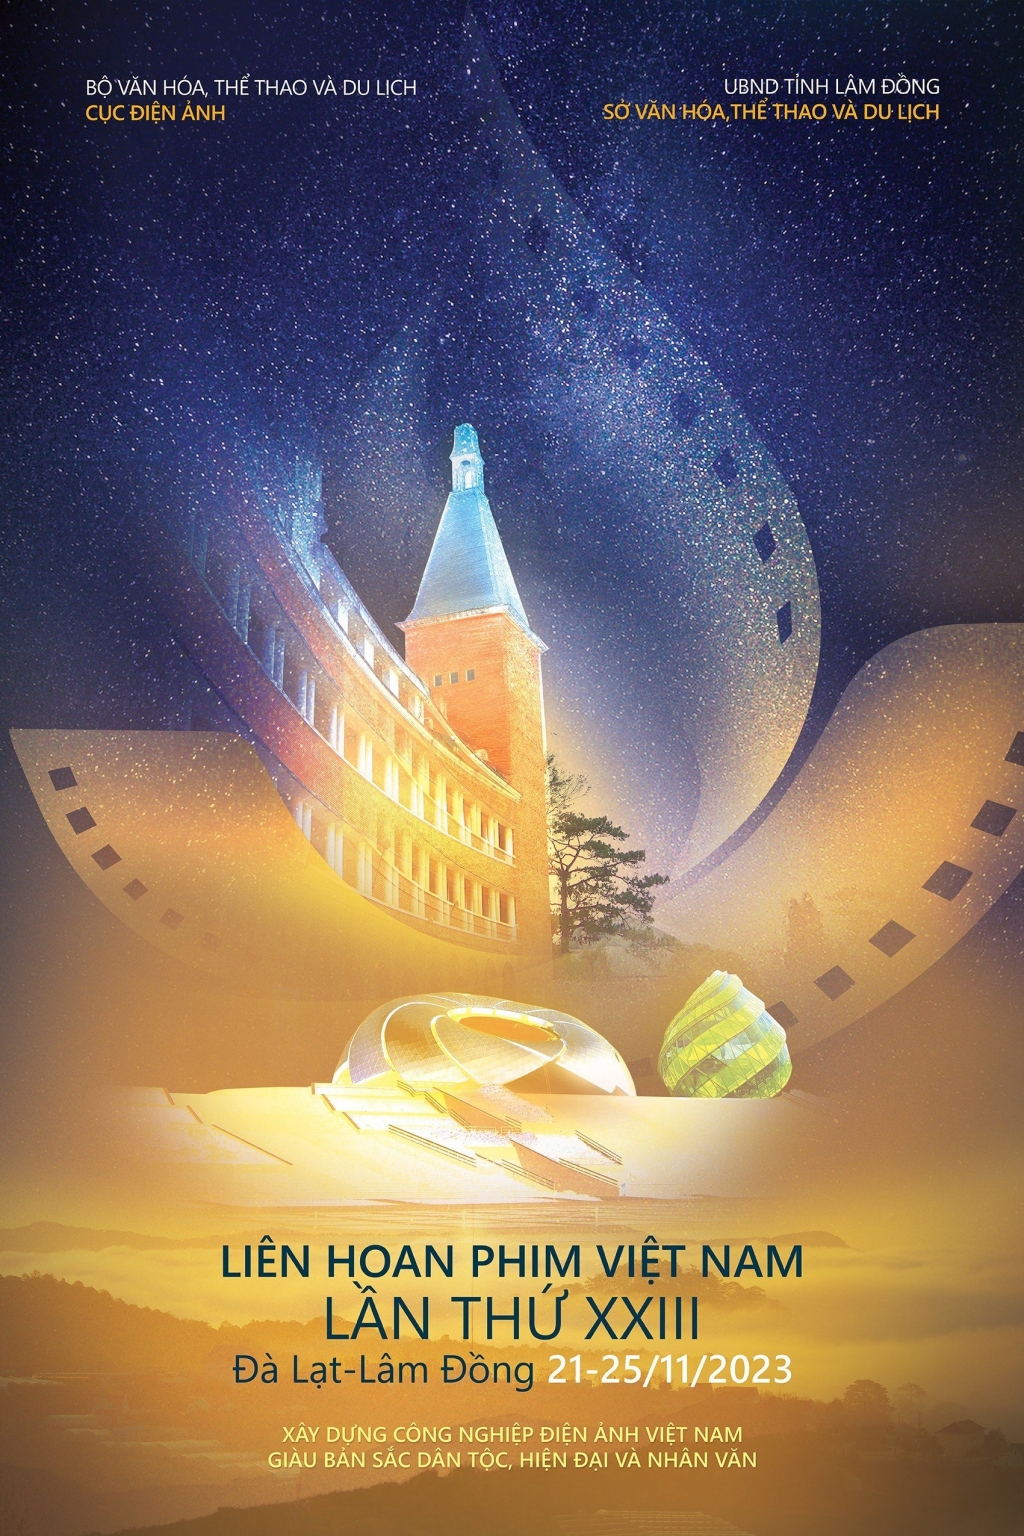 Đà Lạt đẹp 'huyền ảo' trong trailer Liên hoan phim Việt Nam lần thứ XXIII